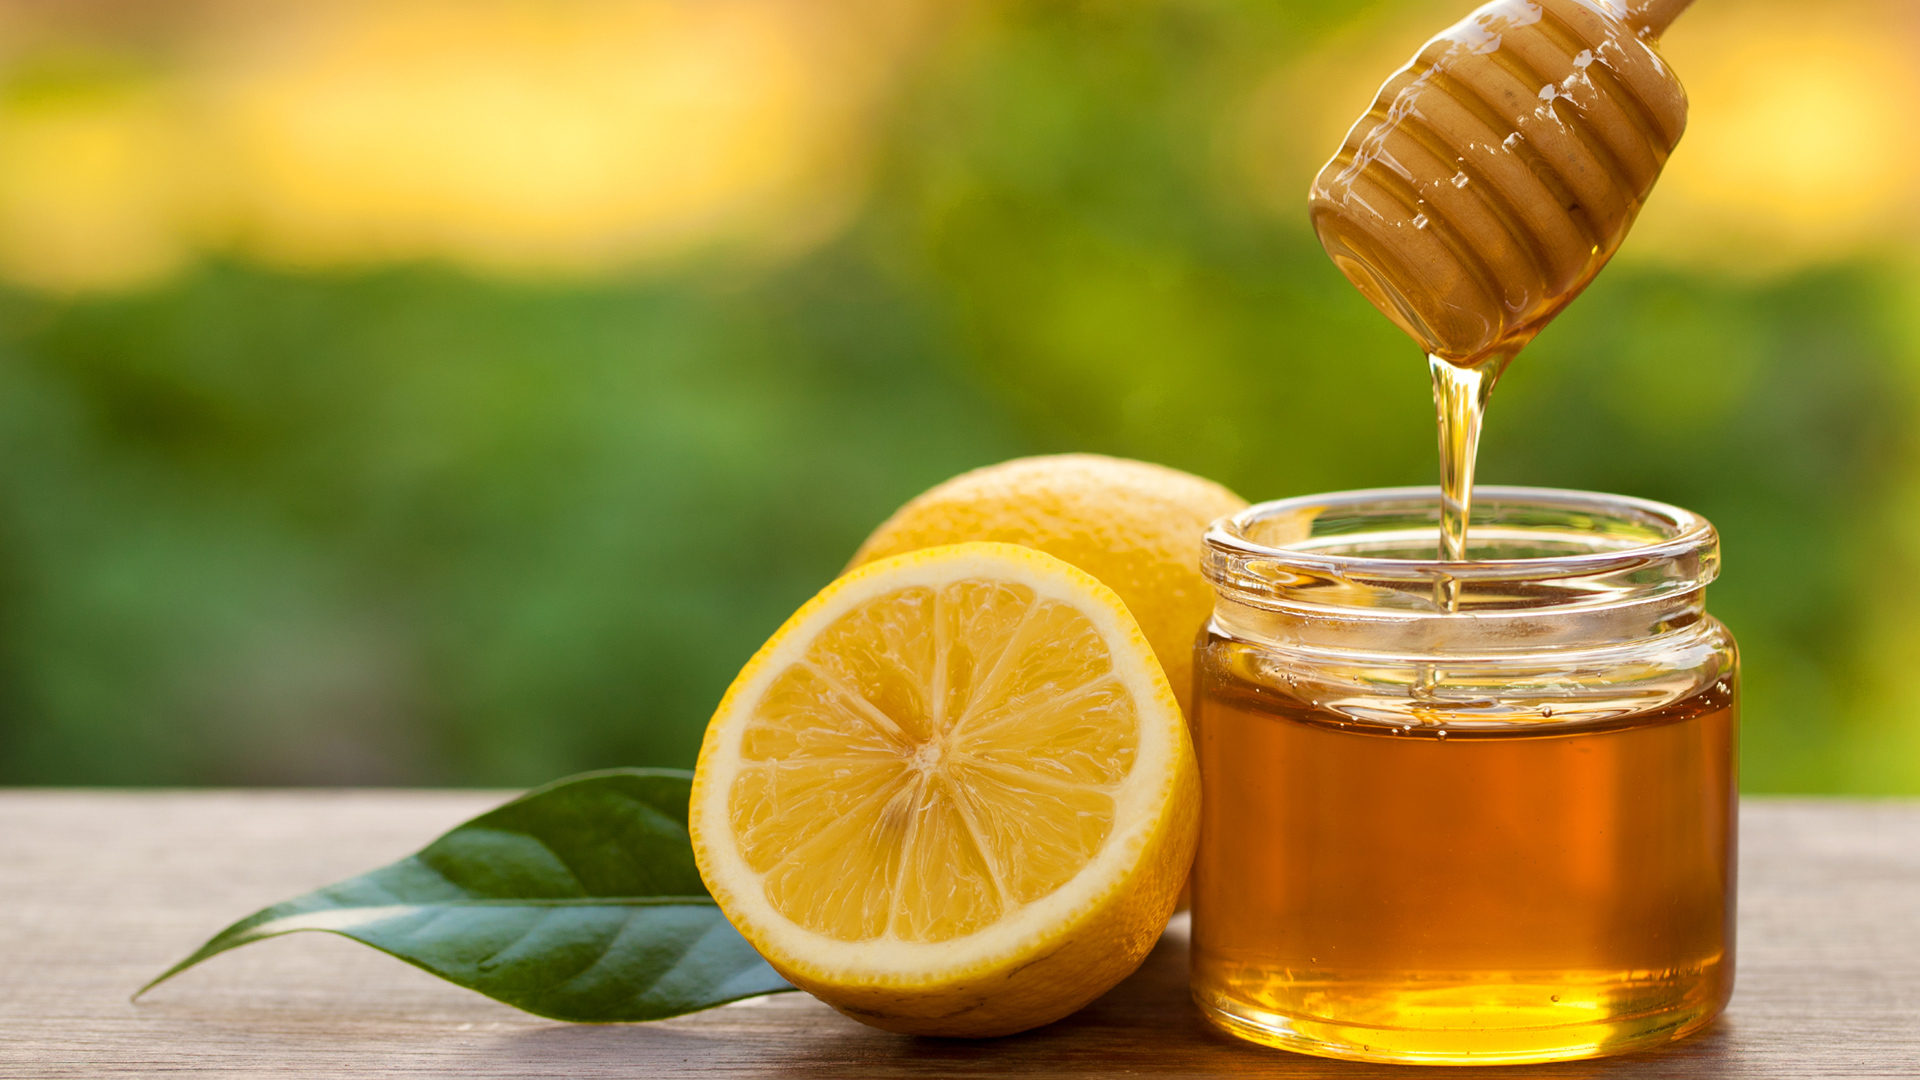 Nước chanh mật ong: Một phương thuốc hiệu quả hay chỉ là lời đồn vô căn cứ?